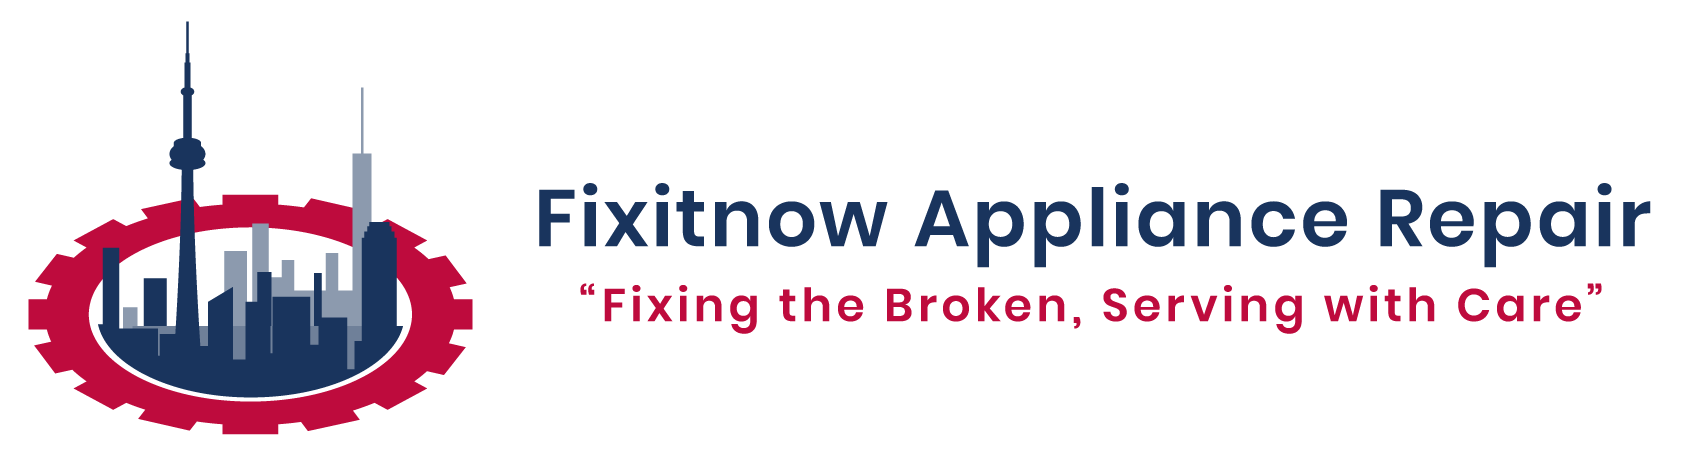 FixitDnow-Appliance-Repair-OG-FileN